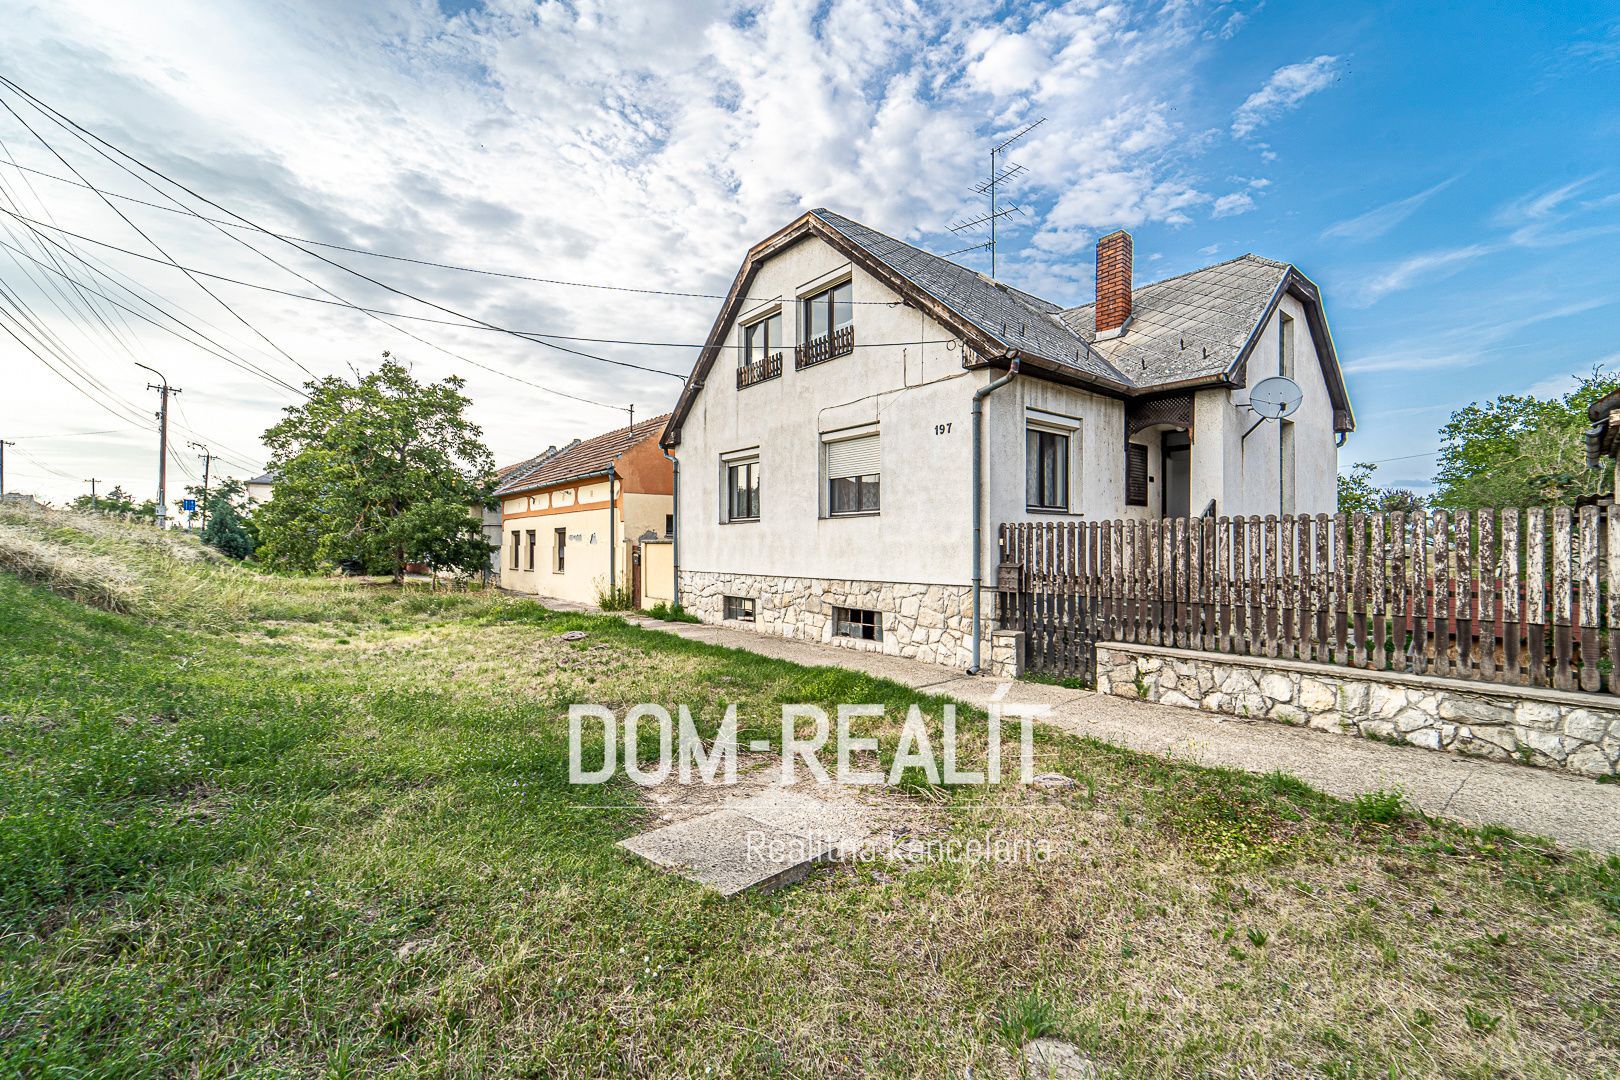 Nehnutelnost DOM-REALÍT ponúka starší rod. dom v maďarskej obci Hegyeshalom (30km od slov. hraníc)